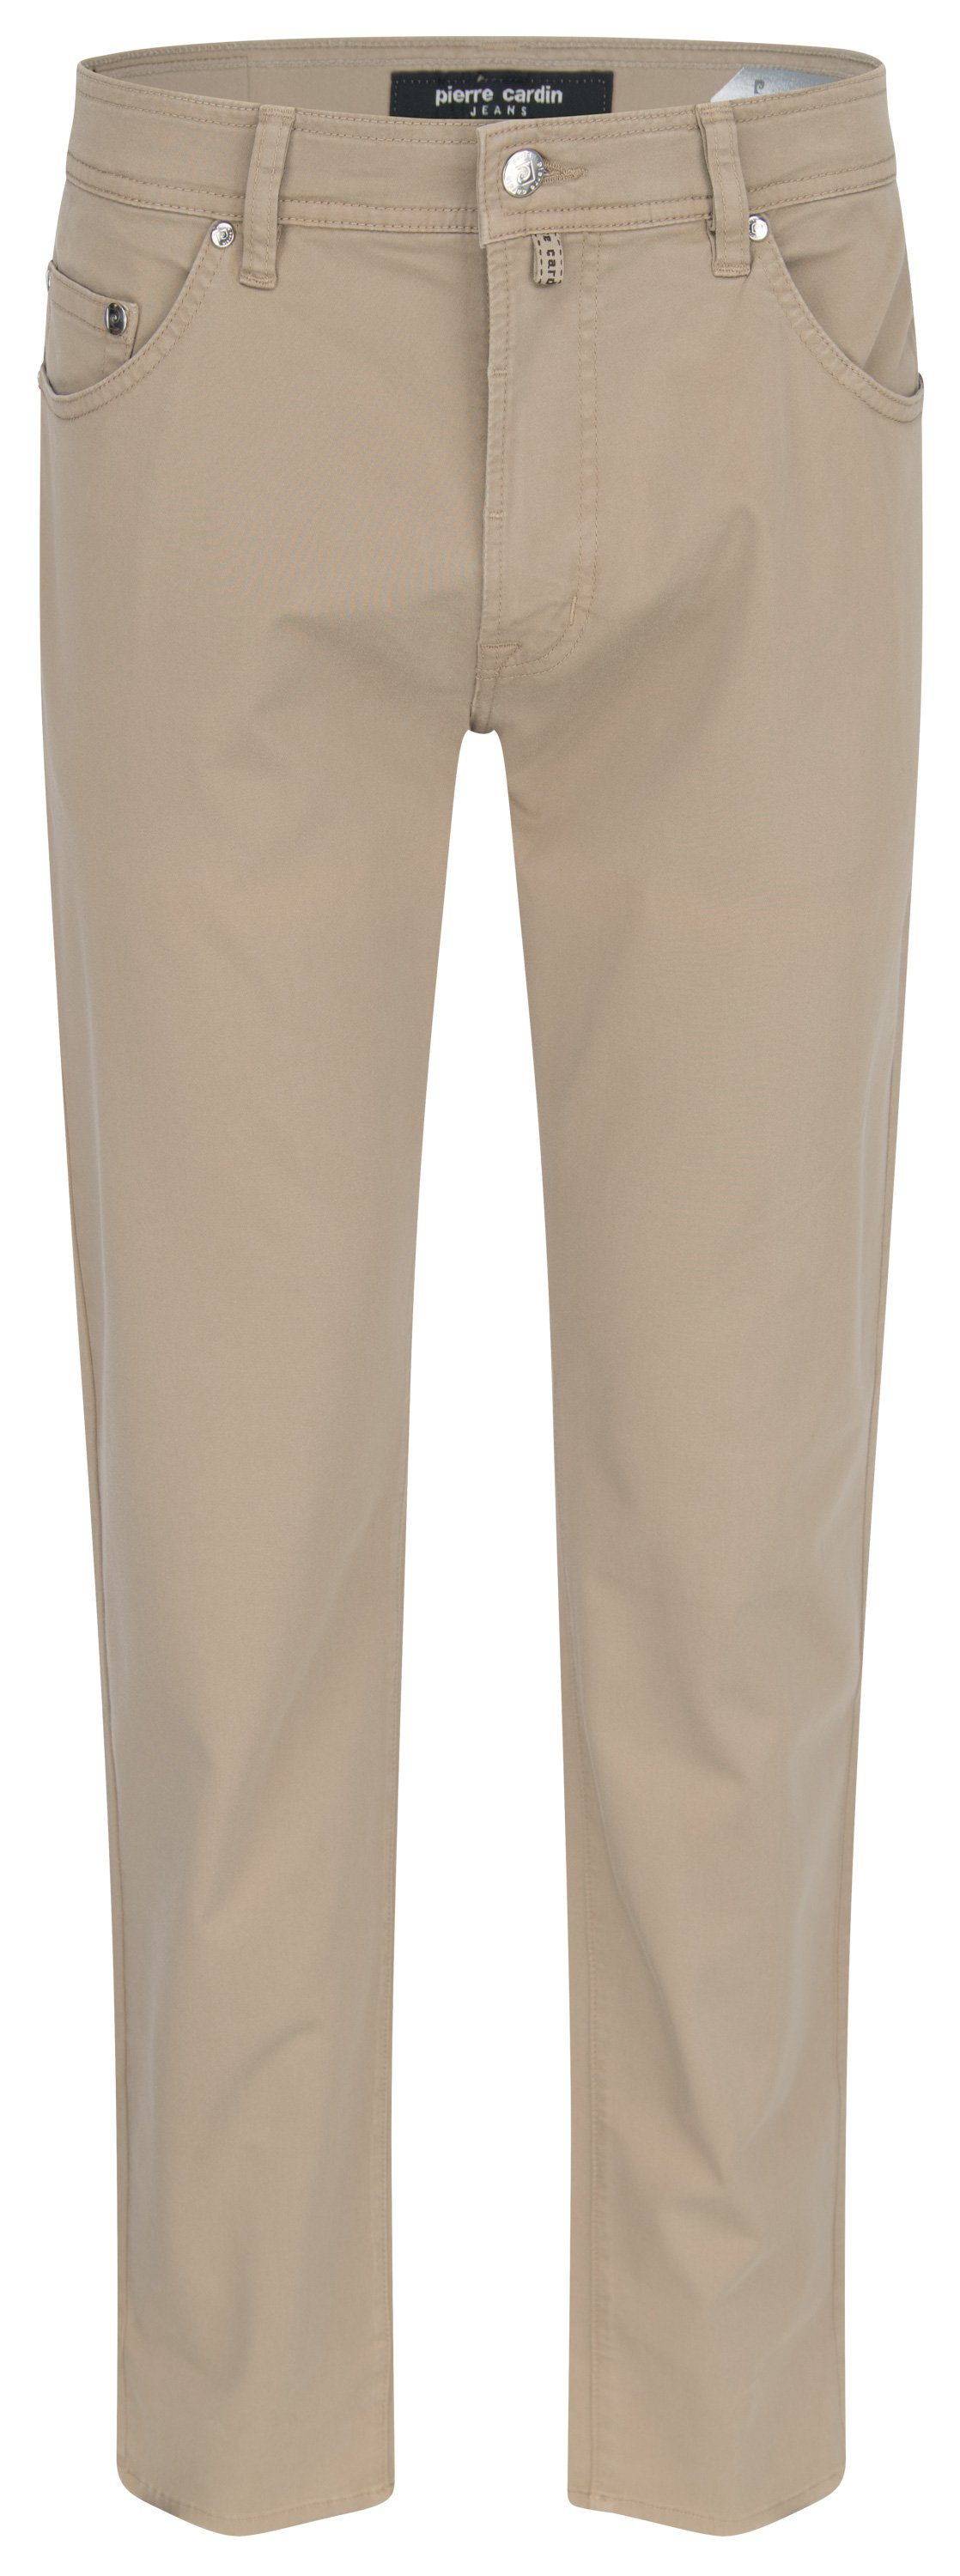 Pierre Cardin 5-Pocket-Jeans PIERRE CARDIN DEAUVILLE beige 31961 2500.25 - Performance Plus